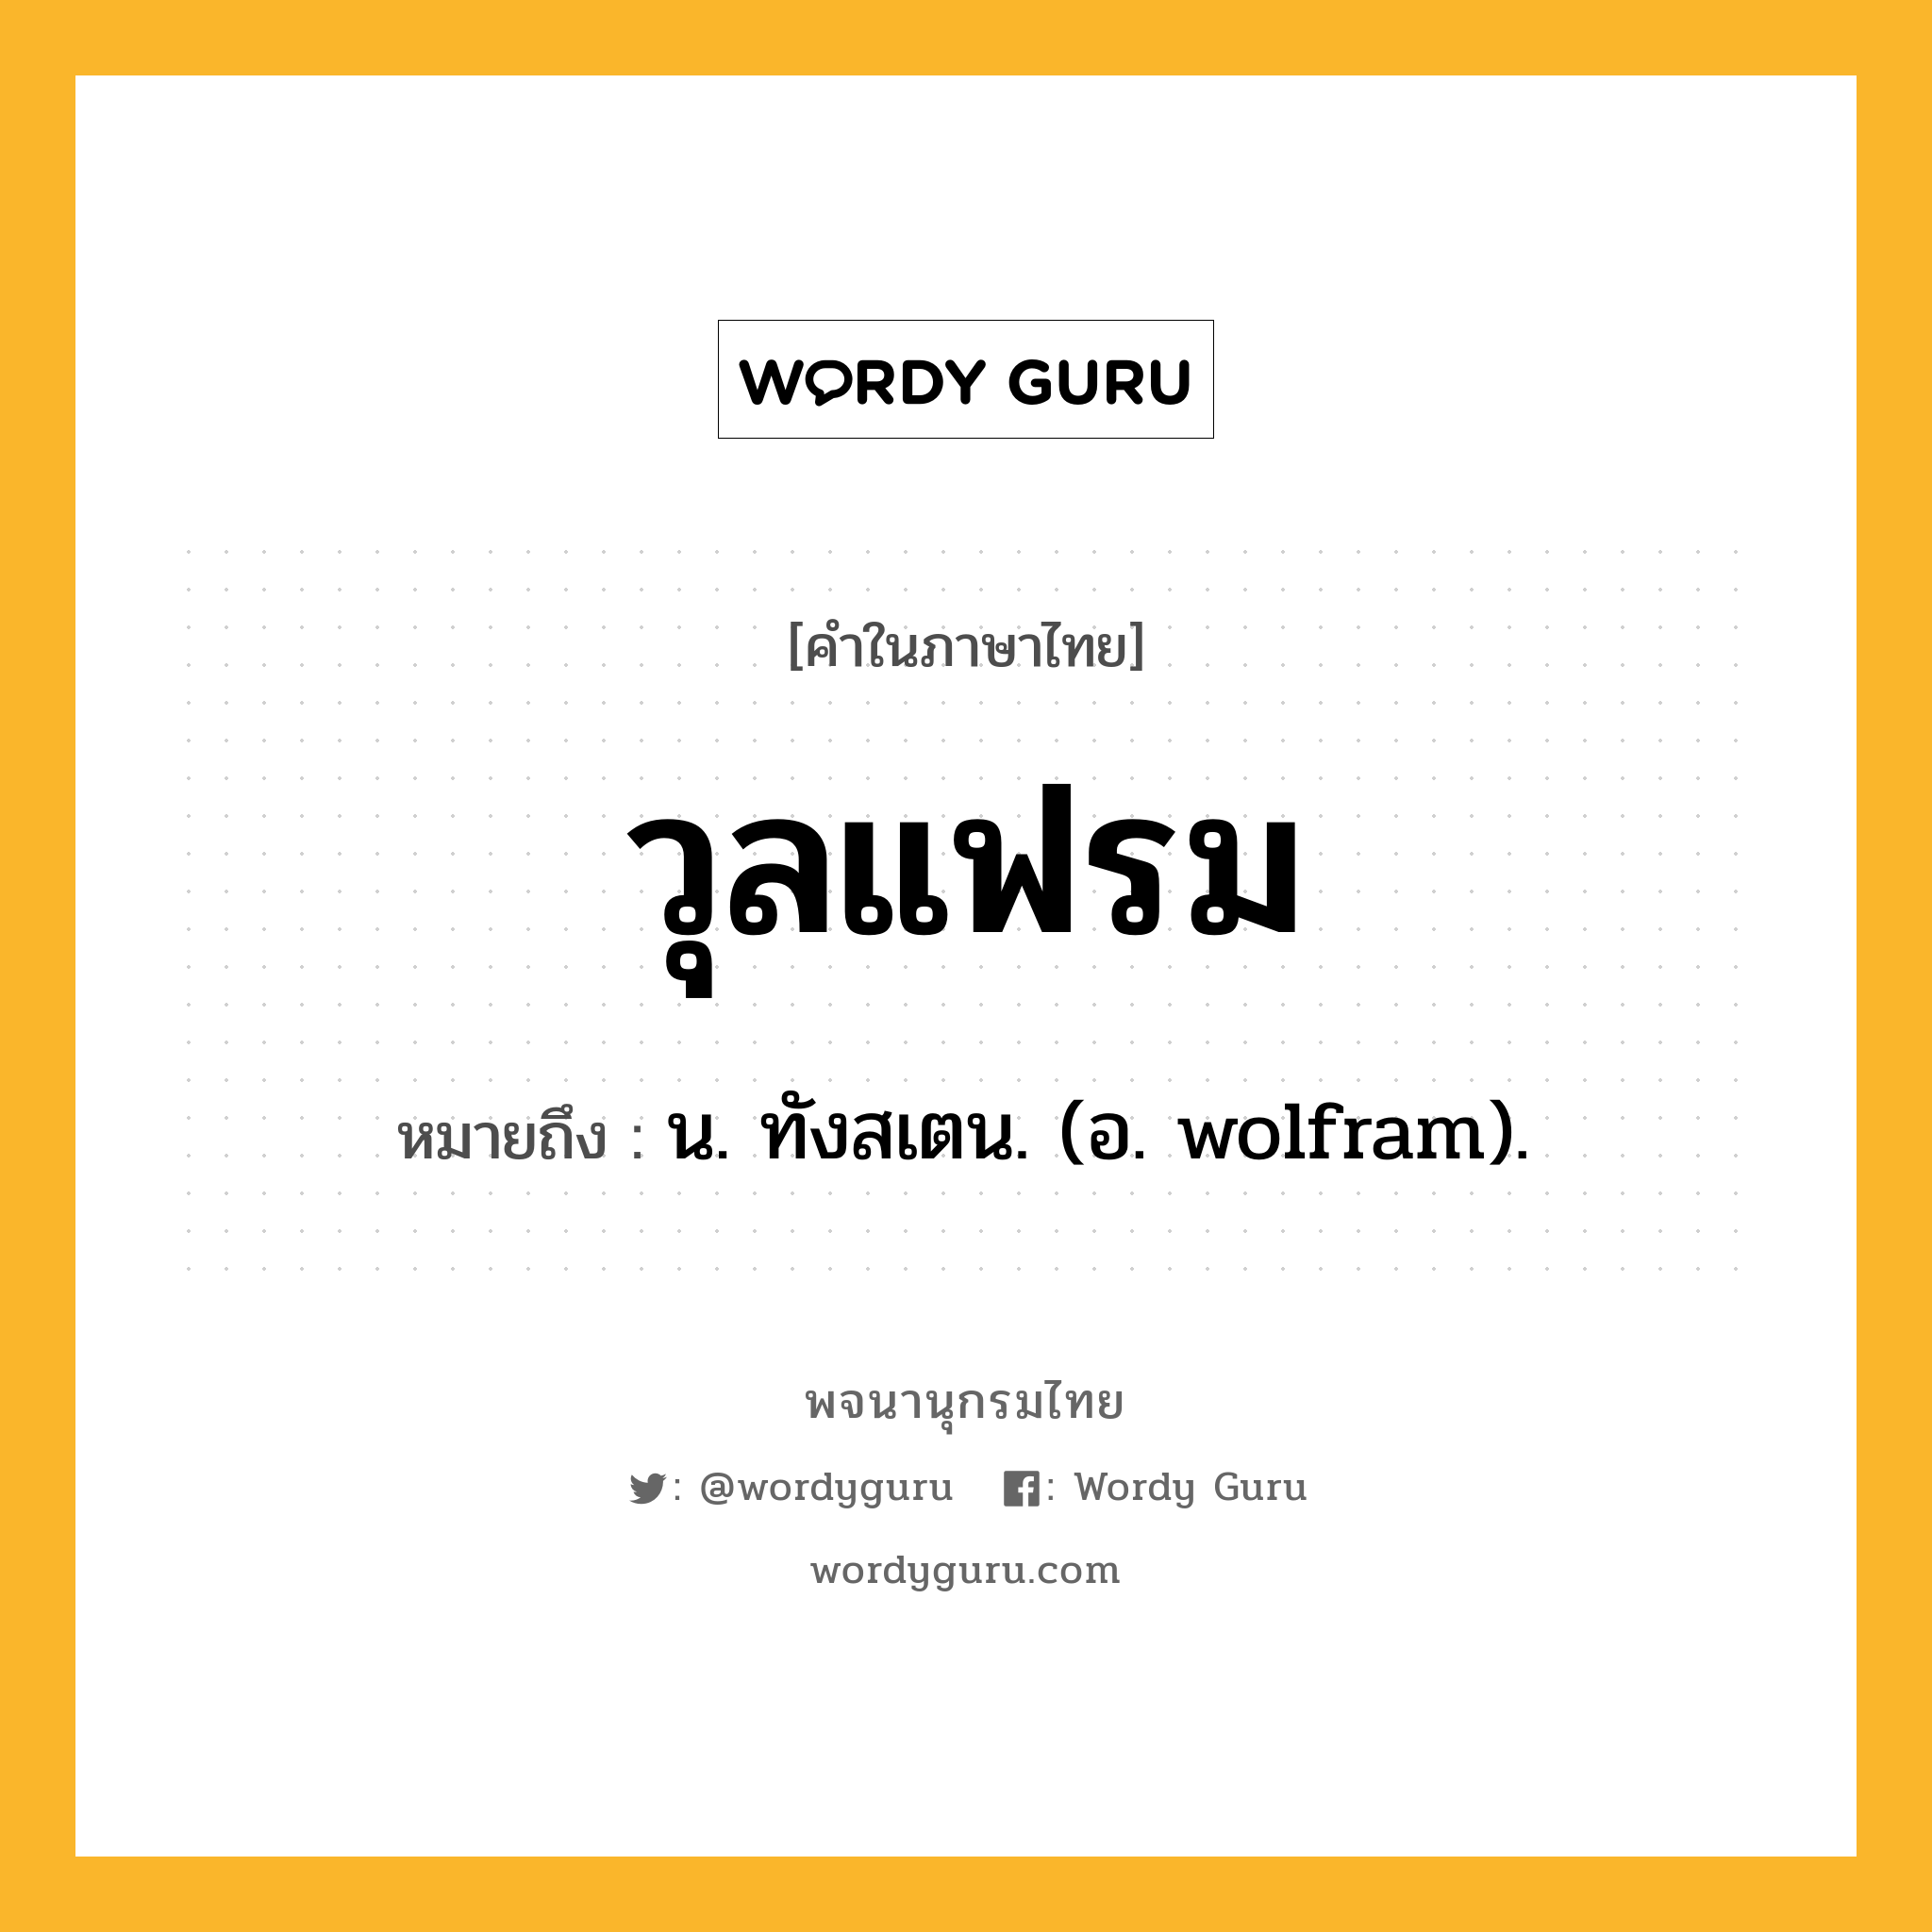 วุลแฟรม ความหมาย หมายถึงอะไร?, คำในภาษาไทย วุลแฟรม หมายถึง น. ทังสเตน. (อ. wolfram).